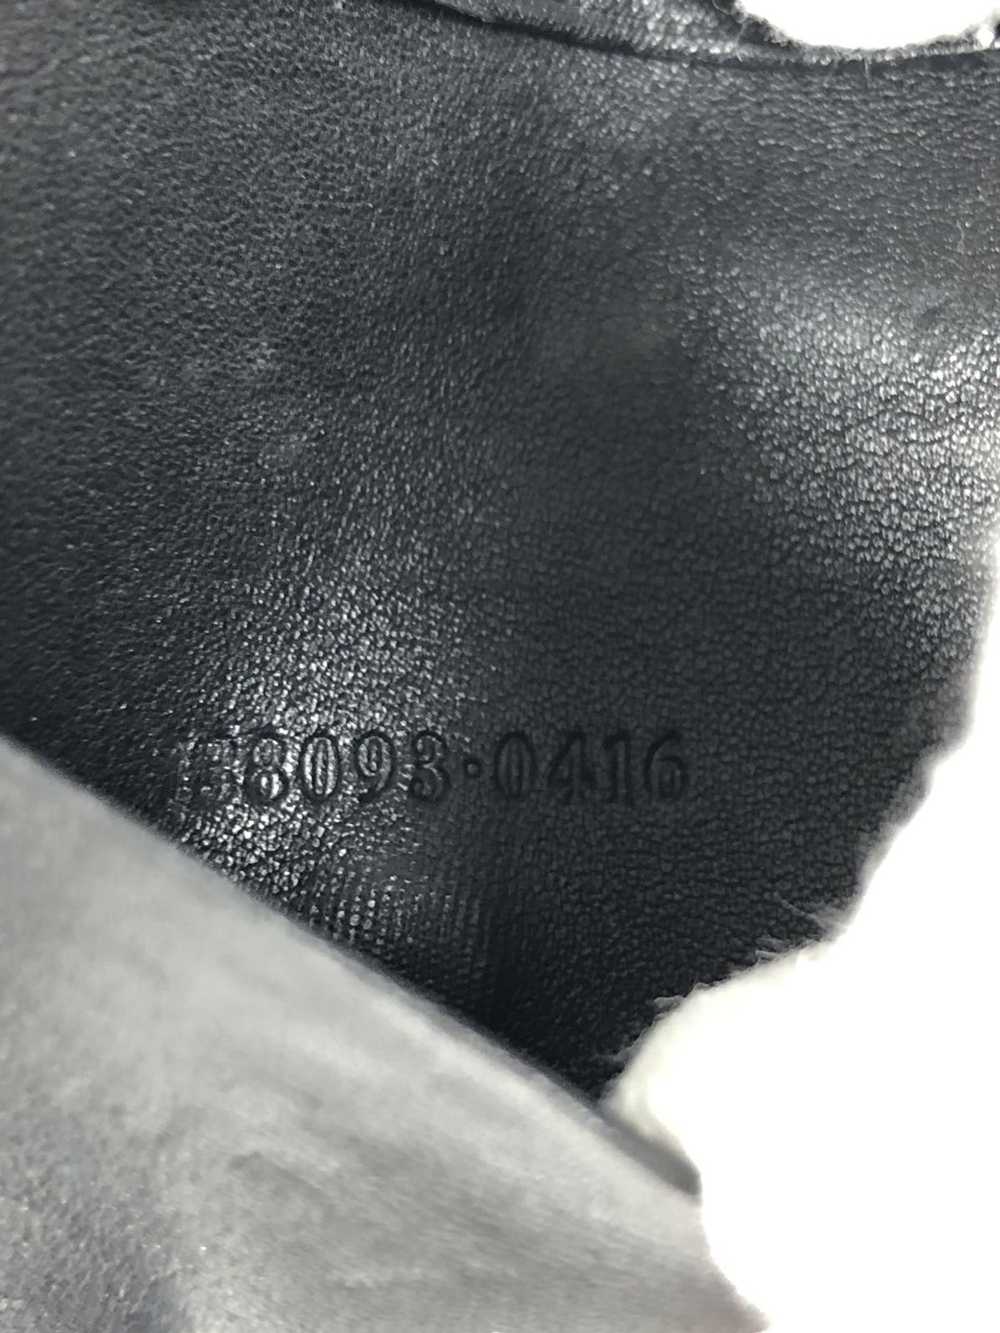 Gucci Gucci gg guccissima leather key holder - image 5